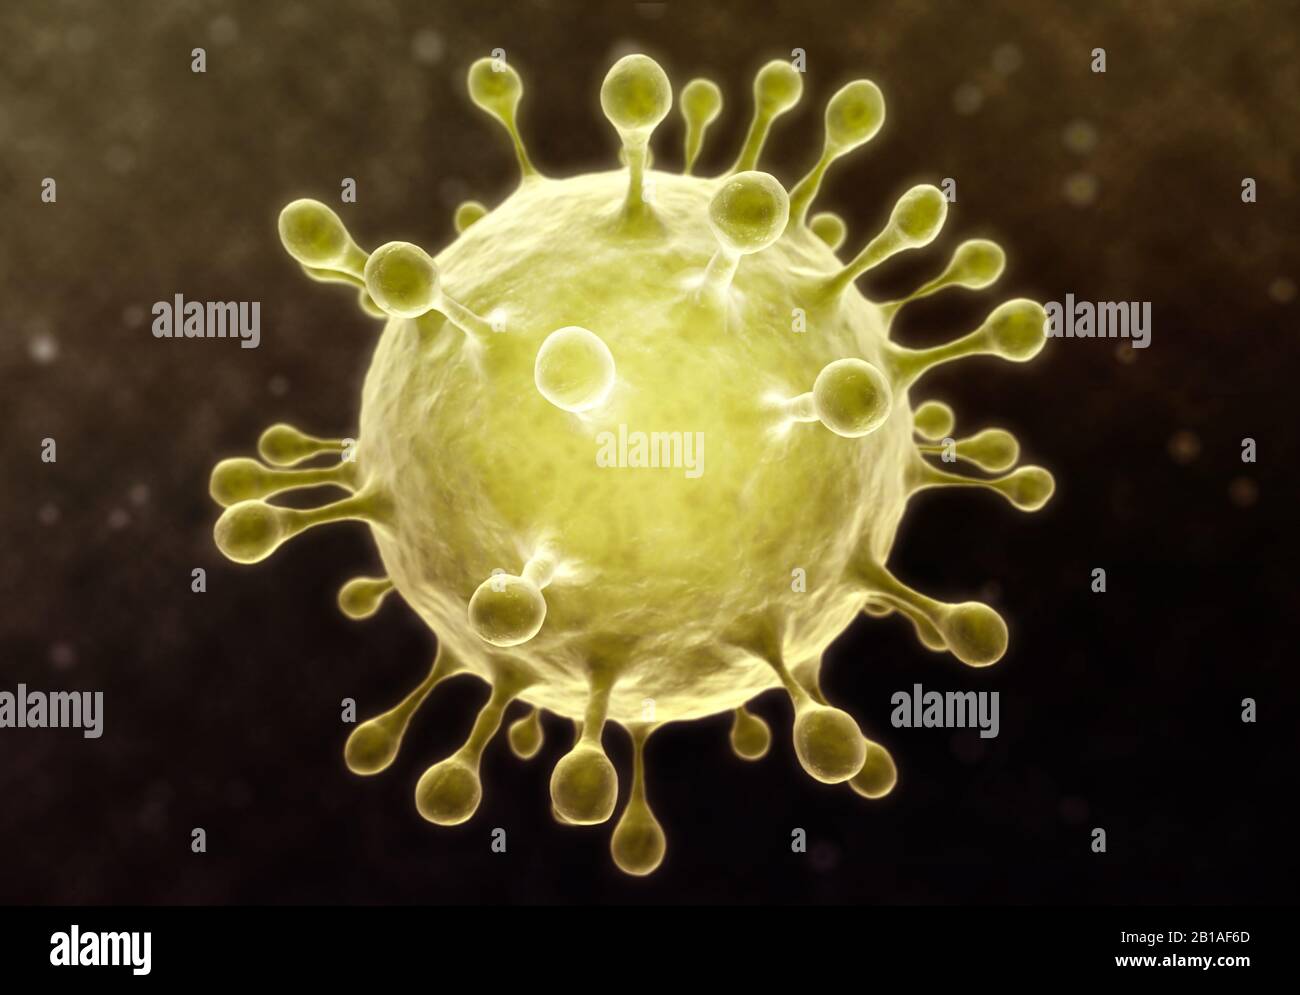 Darstellung der Viruszellen des Coronavirus. Abbildung 3D-Rendering Stockfoto